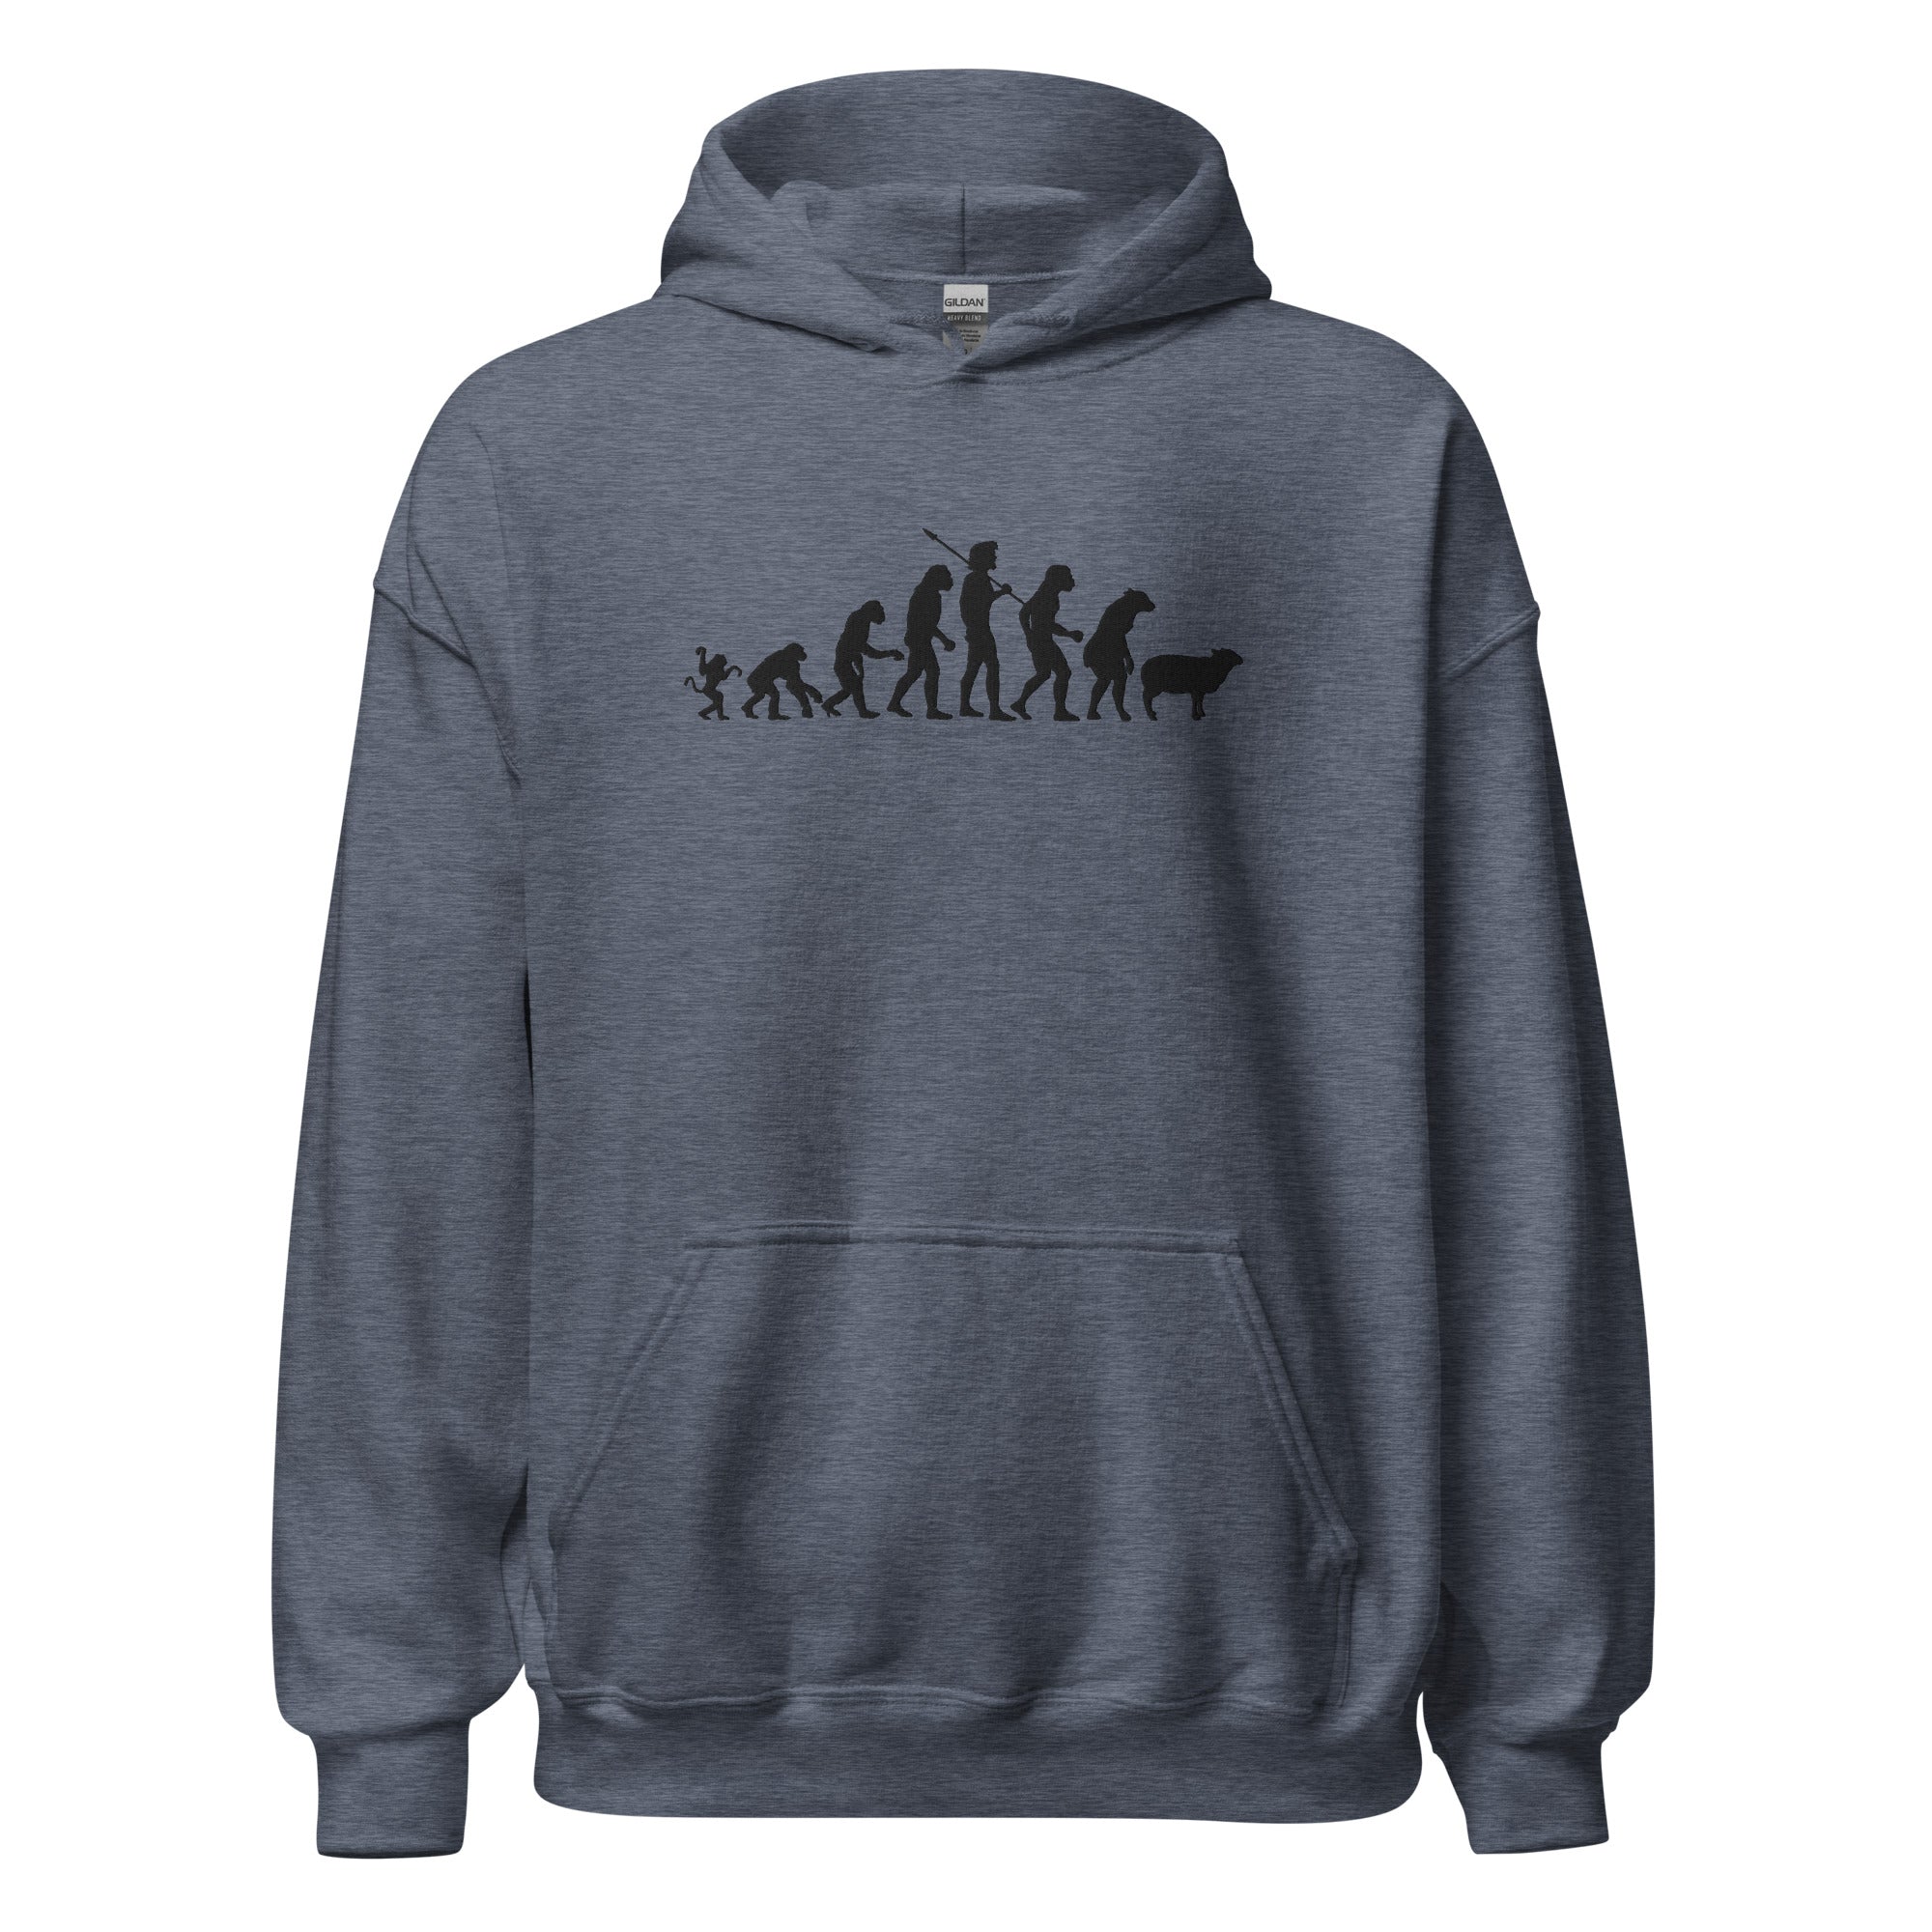 Evolution of Modern Man Embroidered Hoodie Sweatshirt